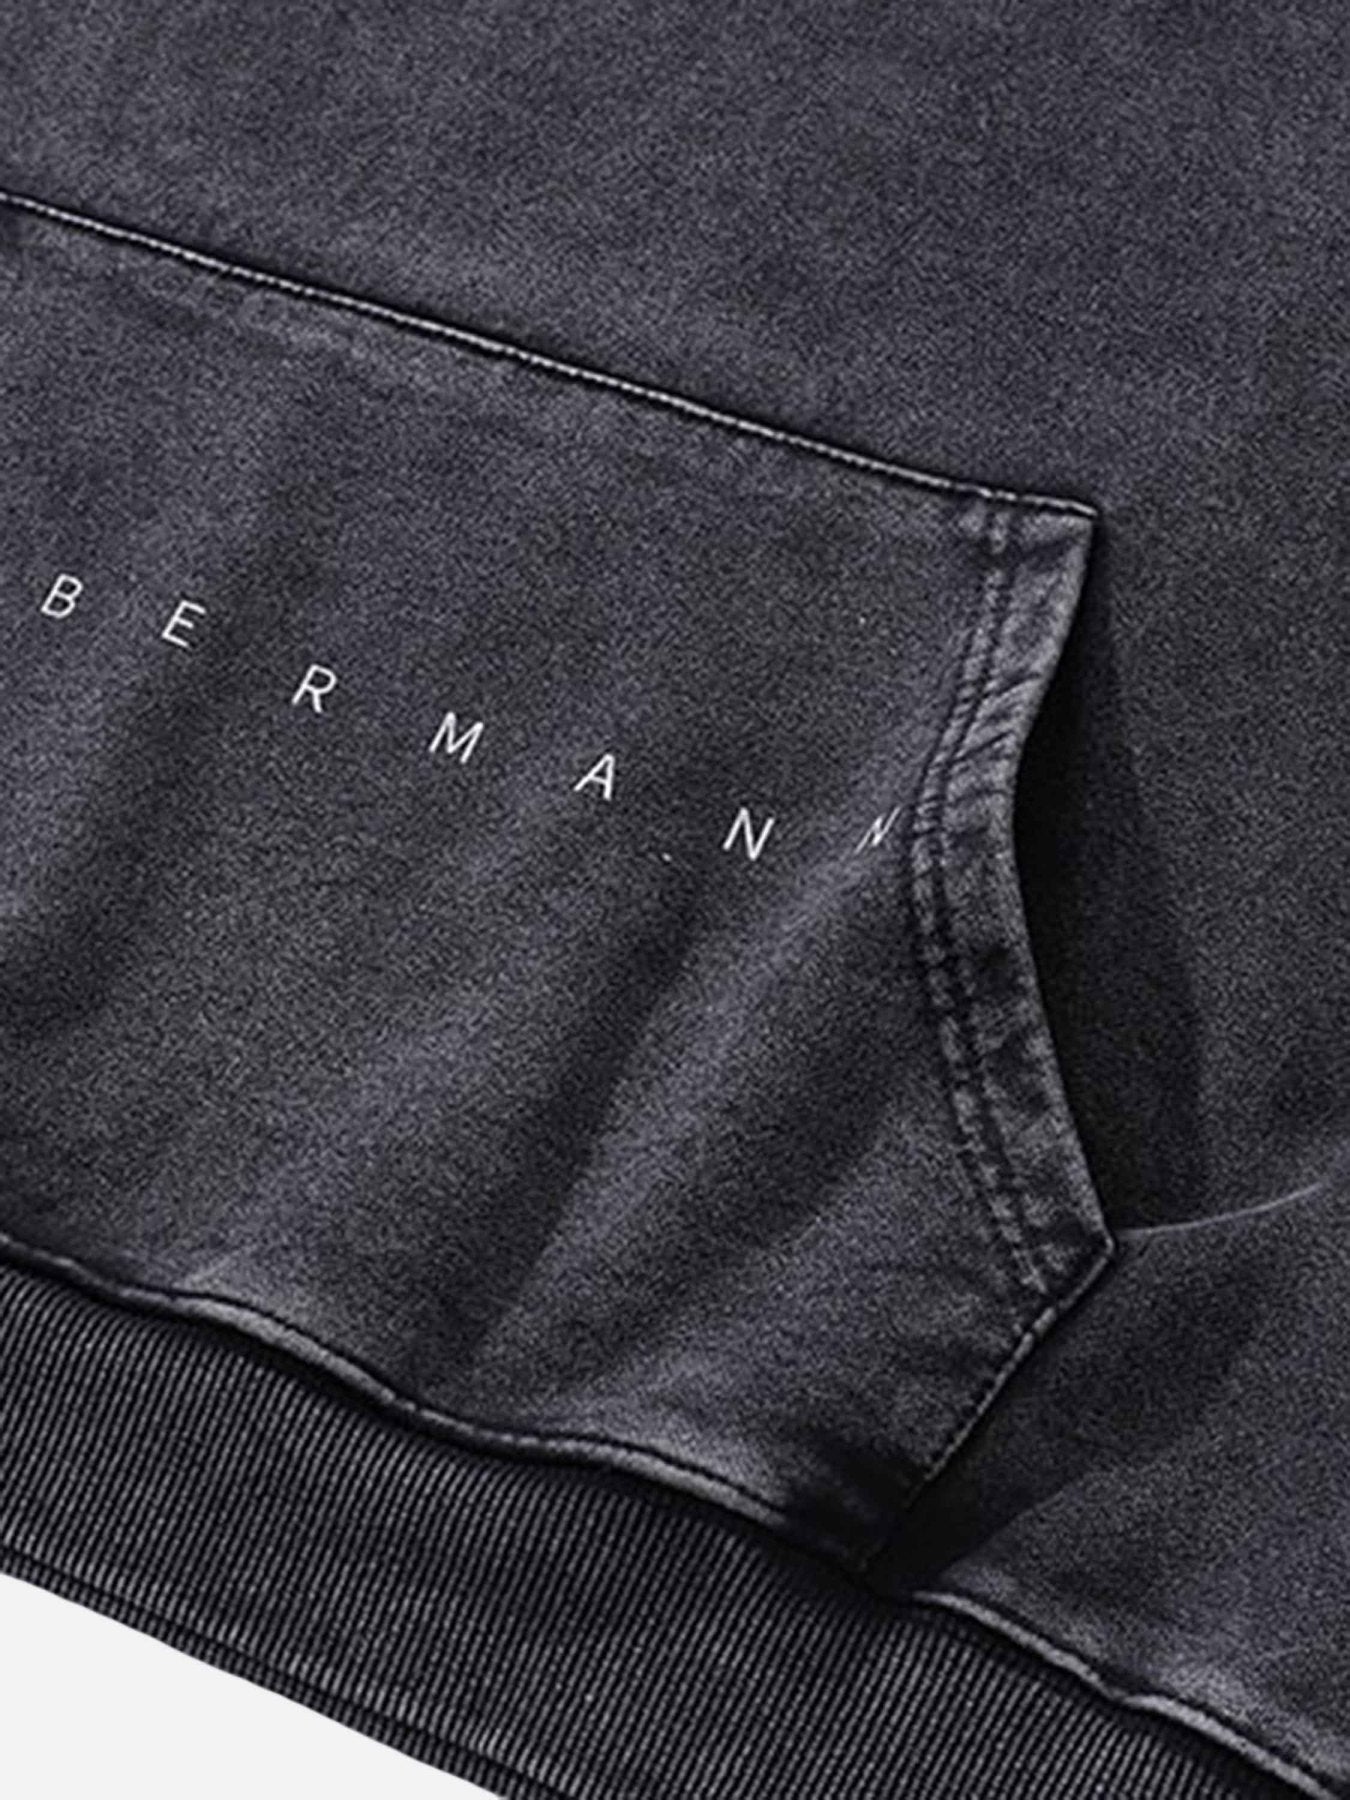 The Supermade Dark Series Doberman Print Hip-hop Old Hoodie